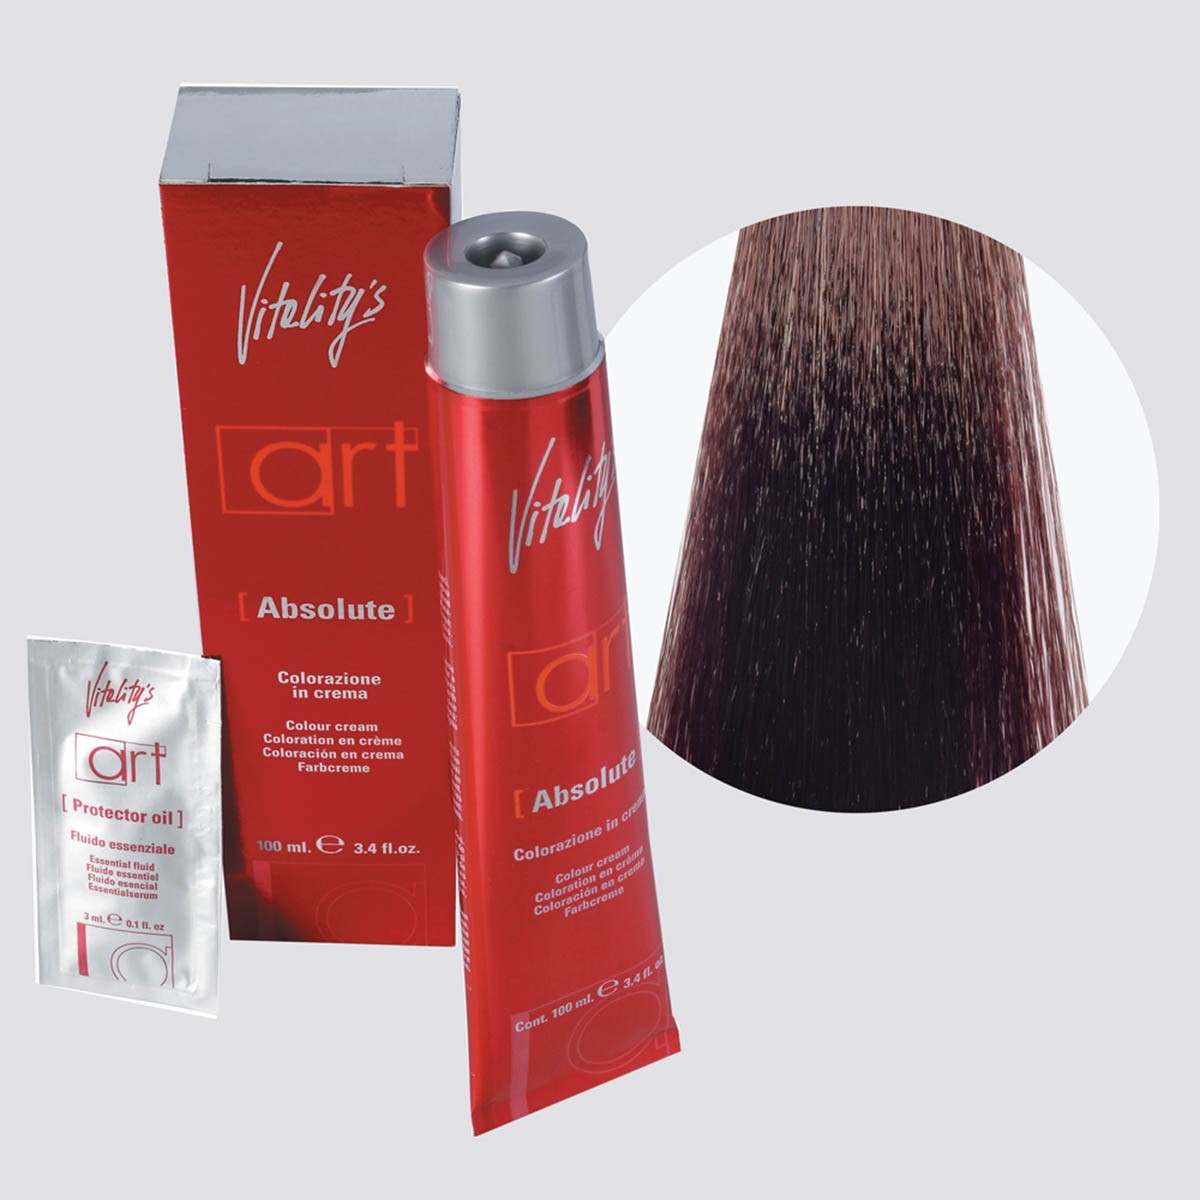 Acquista adesso Tinta capelli Vitality's Art Absolute castano chiaro da 100 ml - 5/0 VITALITY'S 